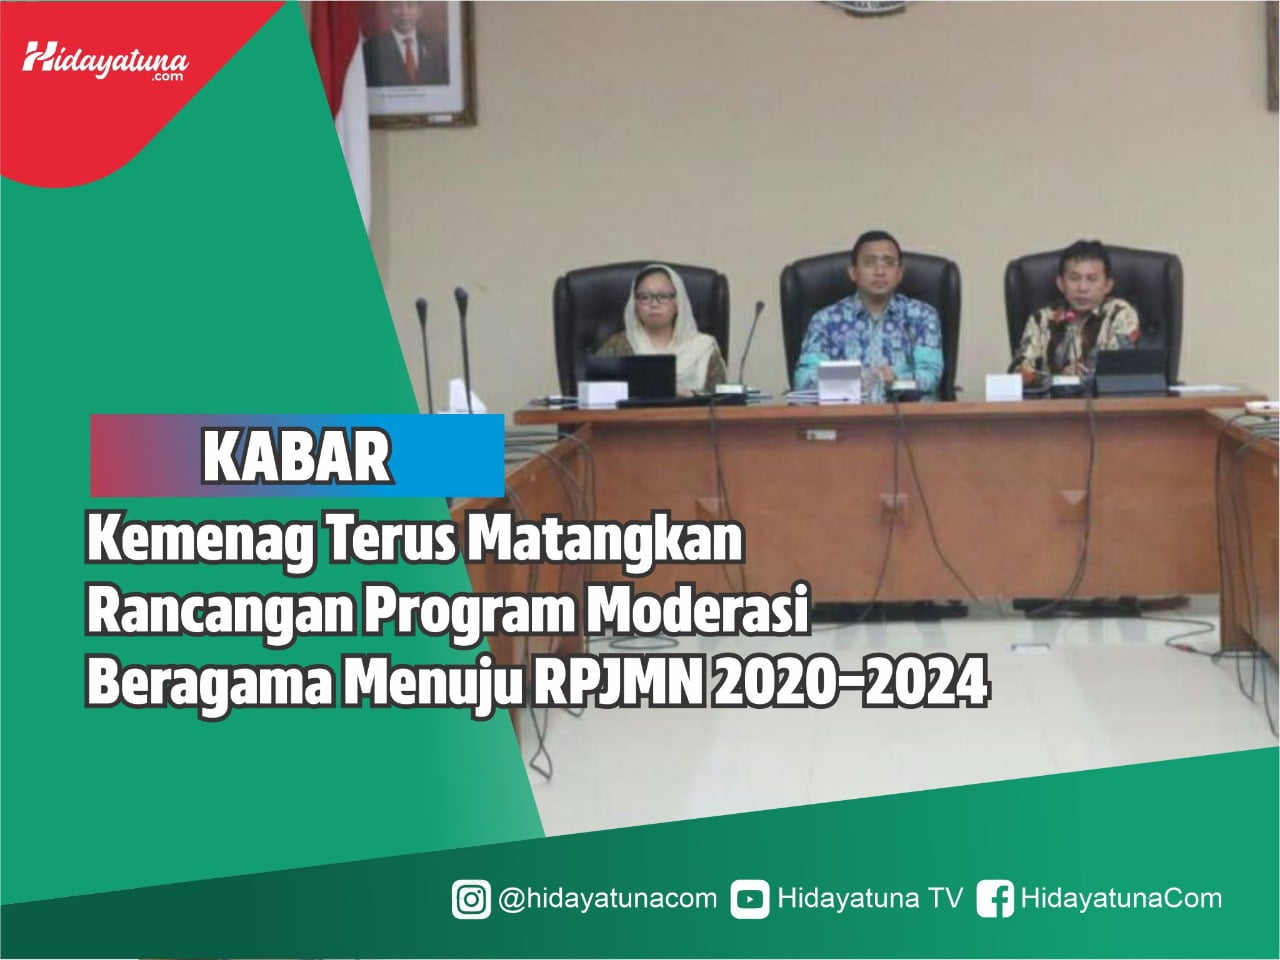  Kemenag Terus Matangkan Rancangan Program Moderasi Beragama Menuju RPJMN 2020-2024